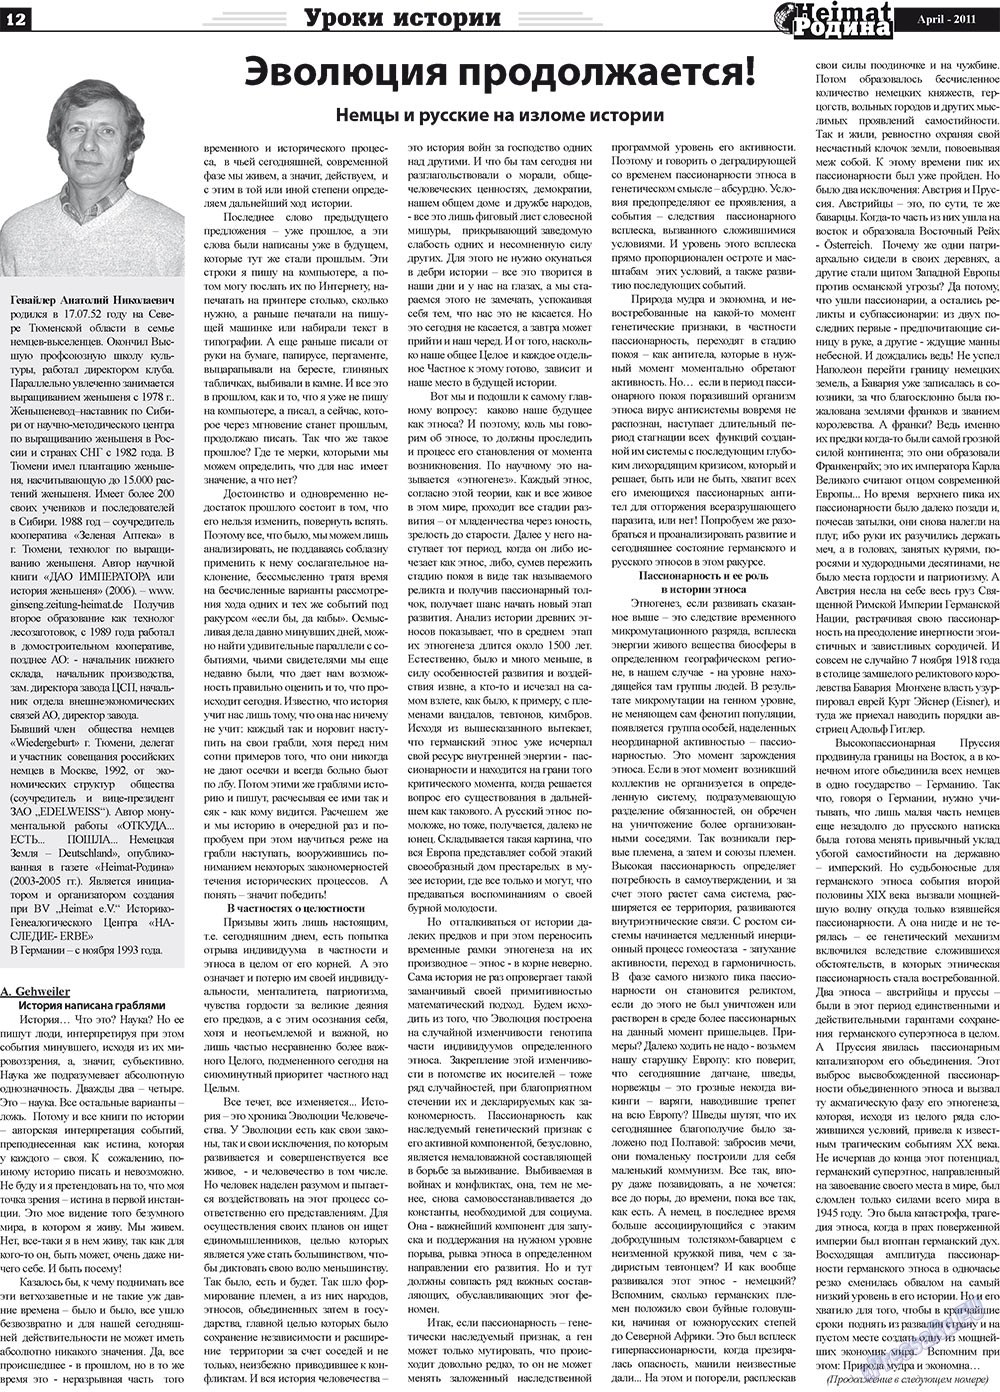 Heimat-Родина (газета). 2011 год, номер 4, стр. 12